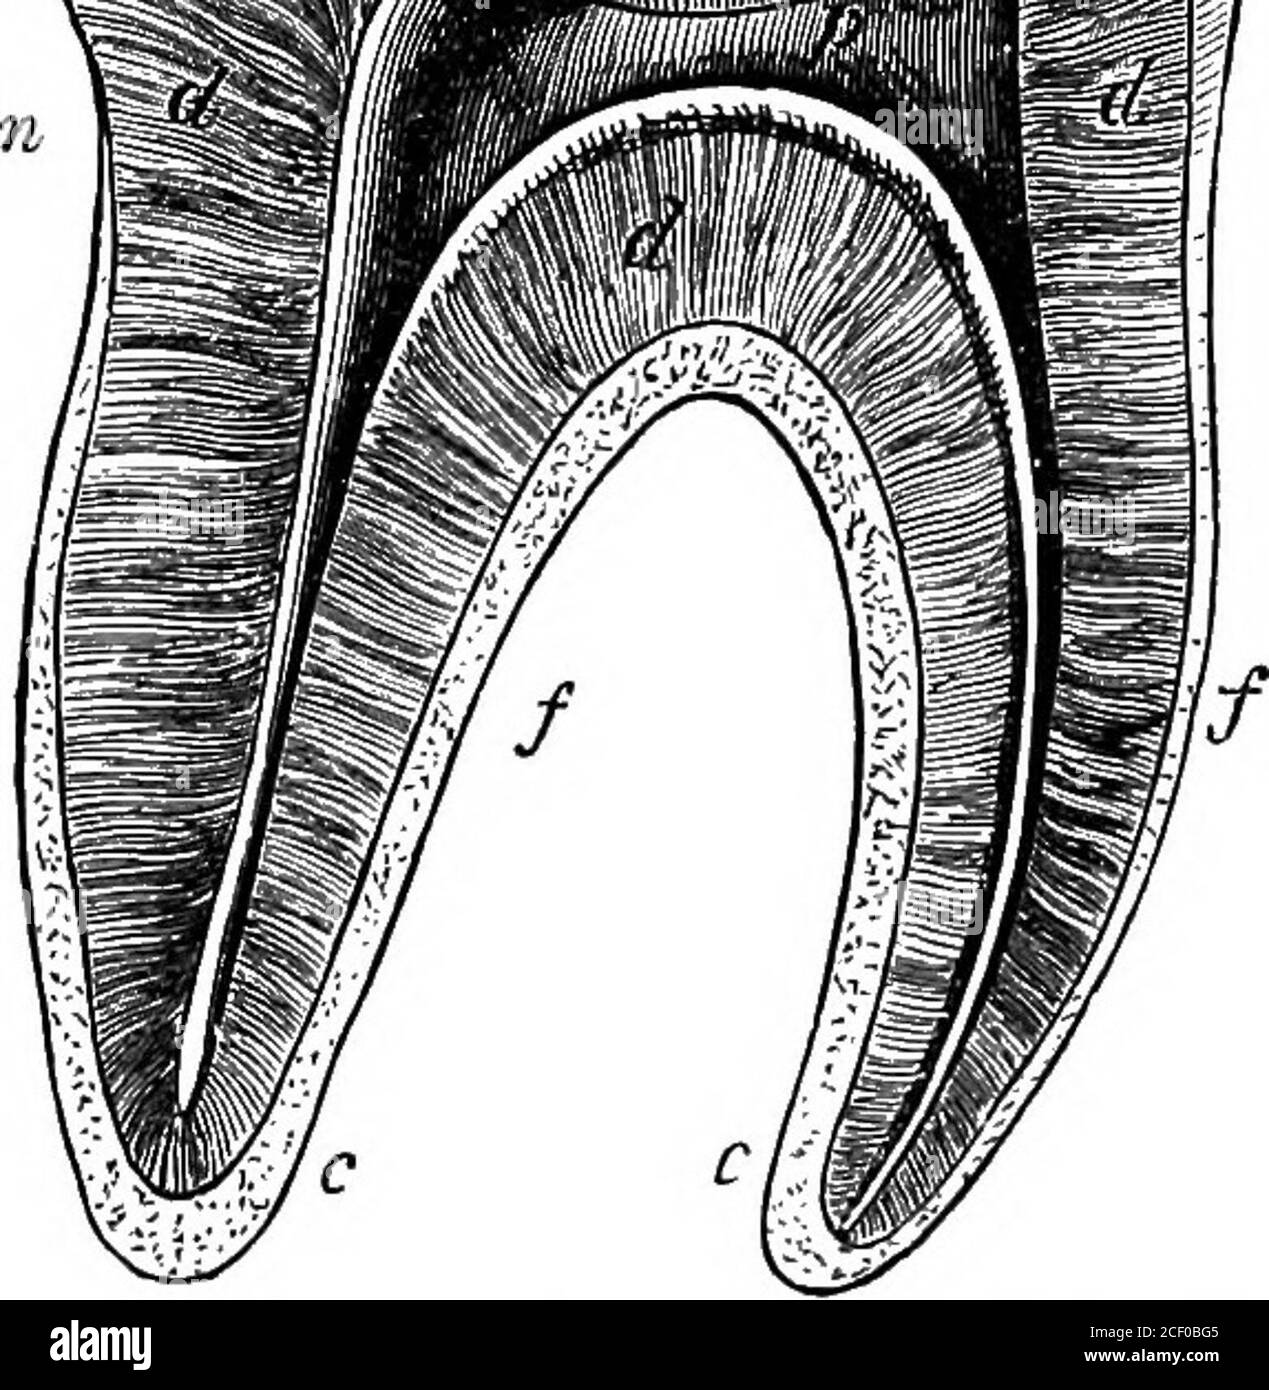 Fisiologia umana. Sostanza calleddentina o avorio (Lat. Galline, un dente).  Assomiglia nella compositioneal tessuto compatto dell'osso, ma contiene una  proporzione molto più grande di materia minerale (settantadue per cento.)  ed è